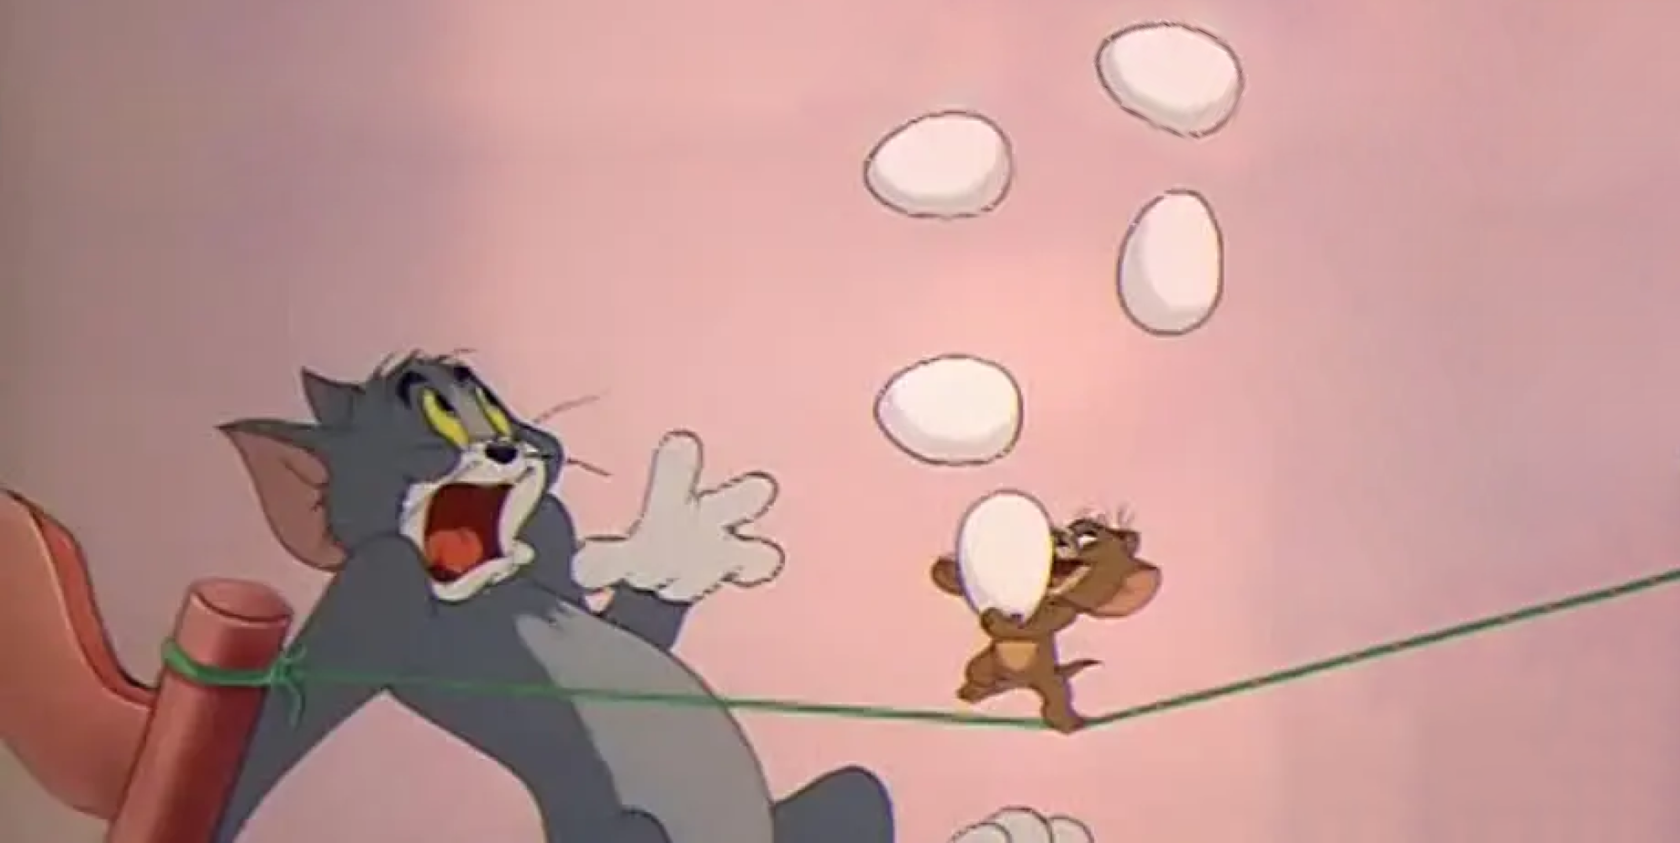 Режиссер тома и джерри. Том и Джерри Hanna Barbera. Tom and Jerry 038 Mouse.